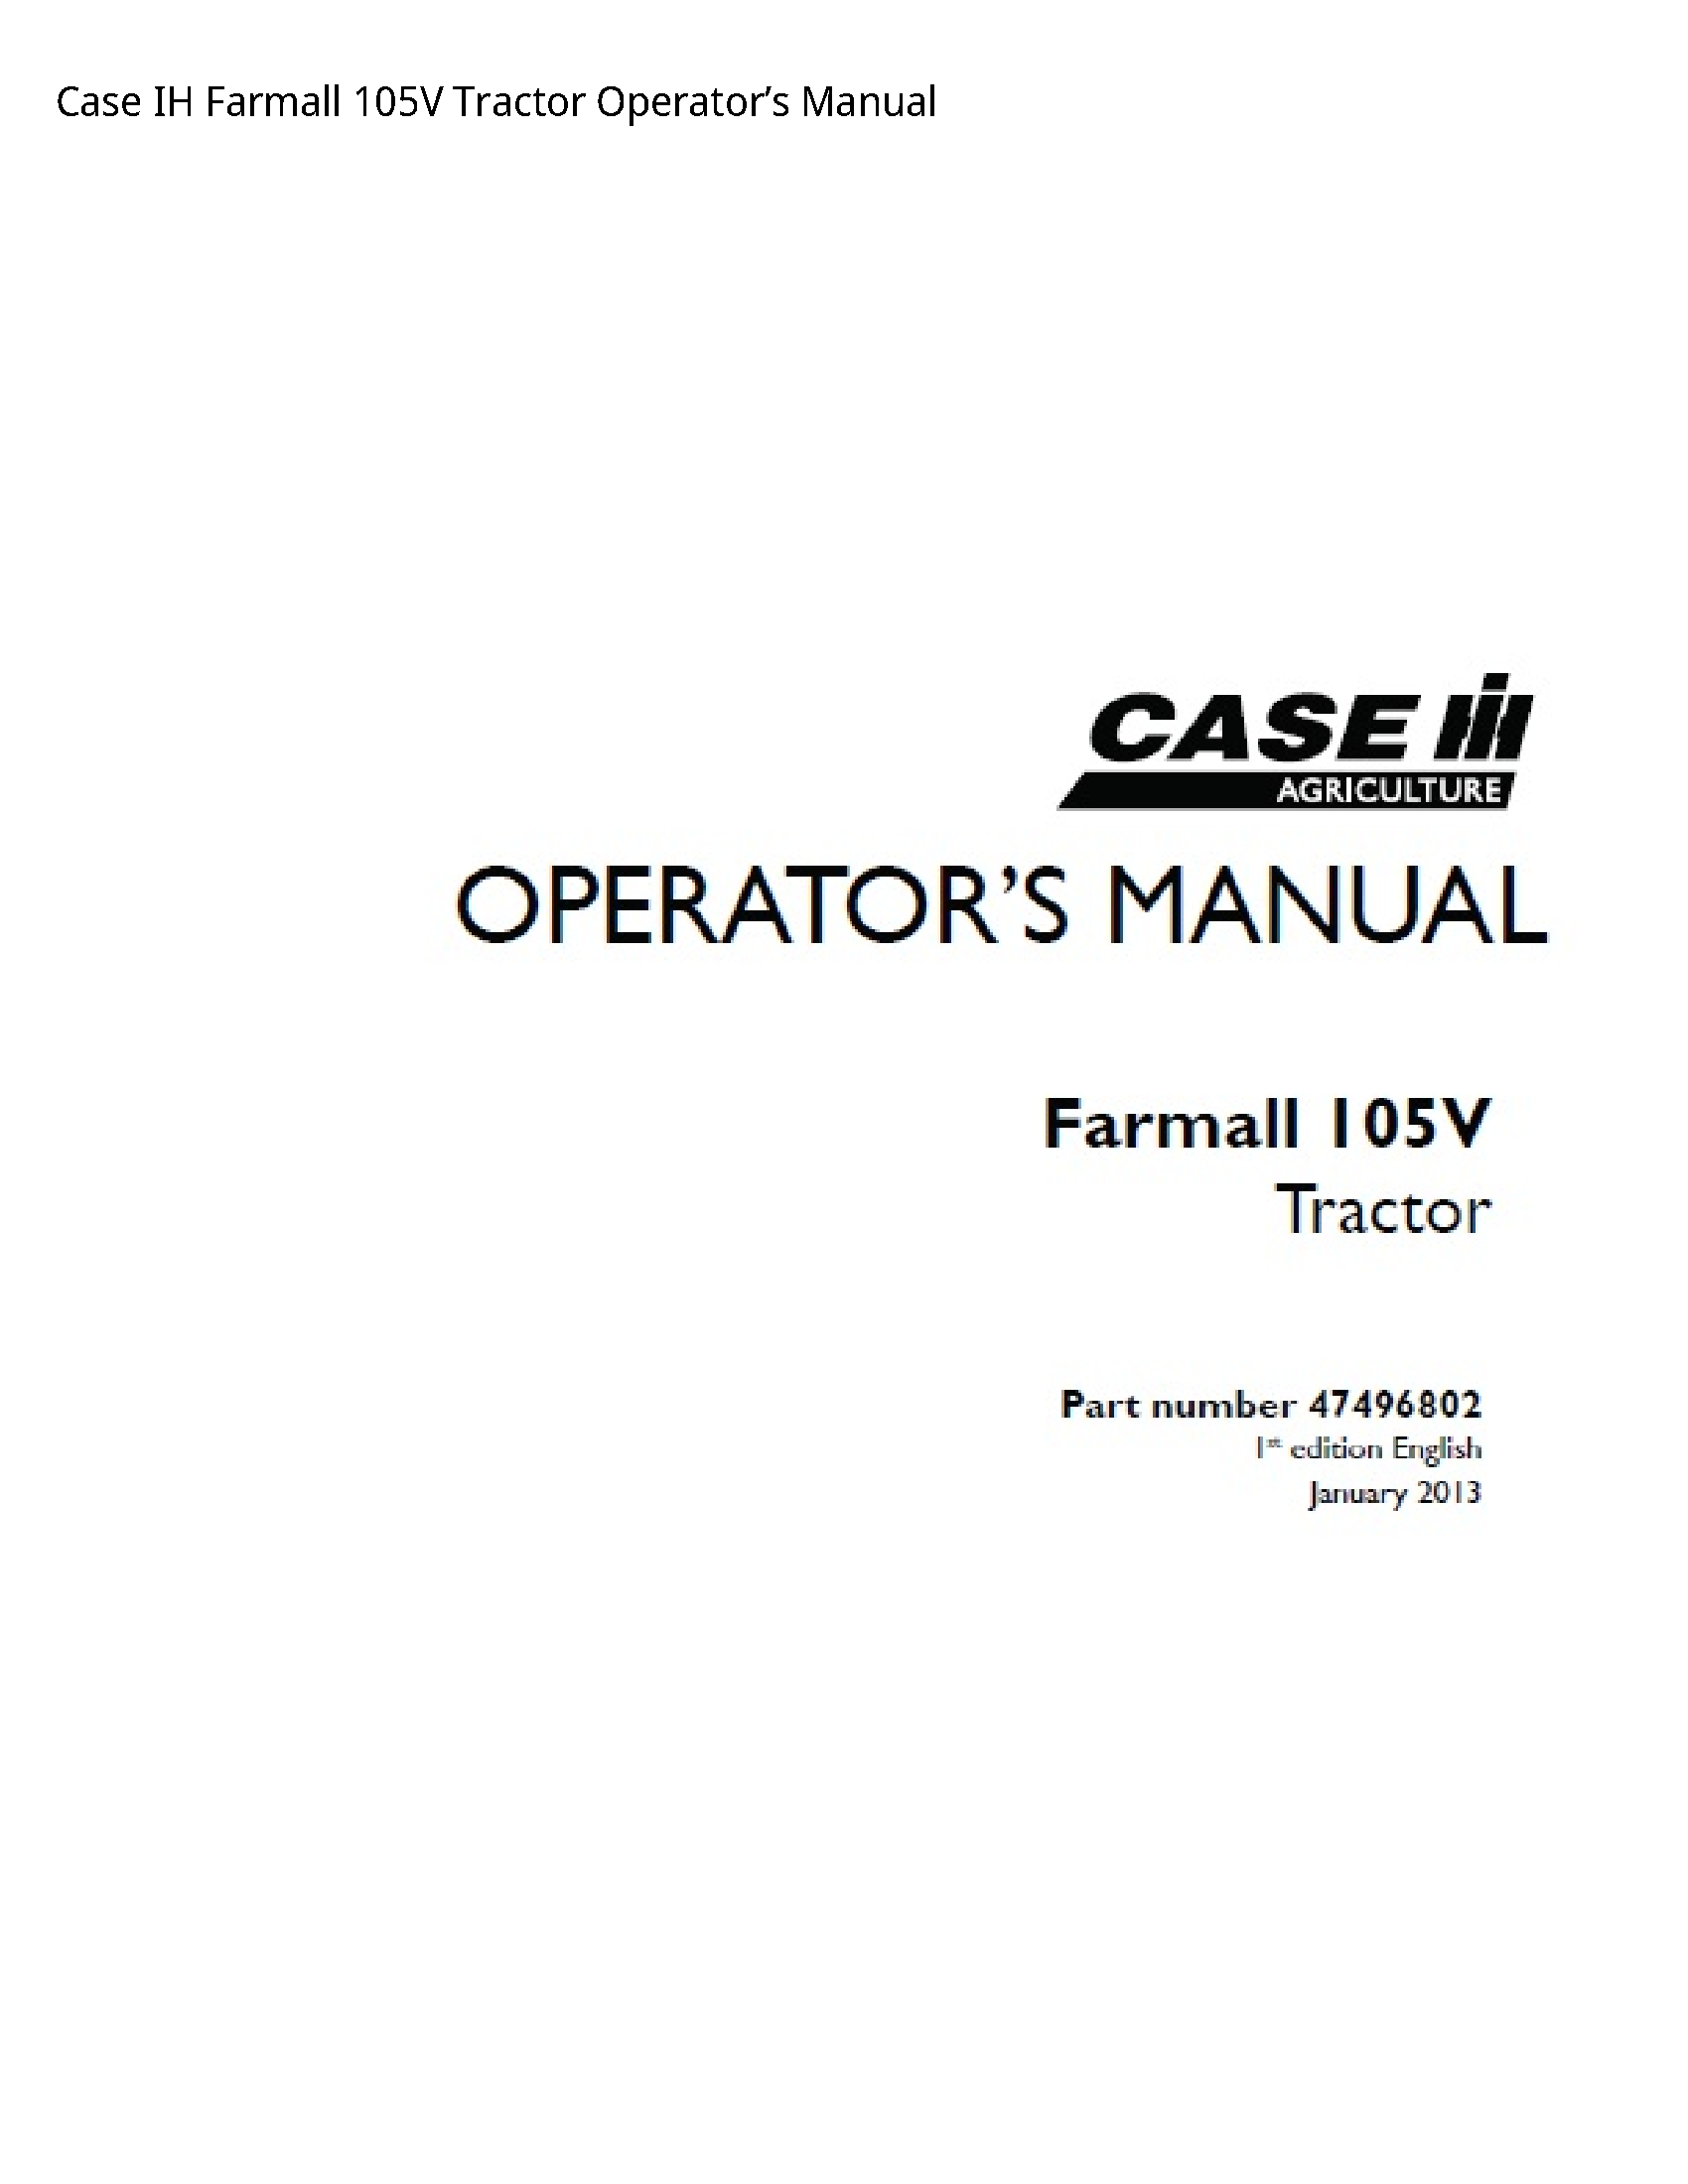 Case/Case IH 105V IH Farmall Tractor Operator’s manual